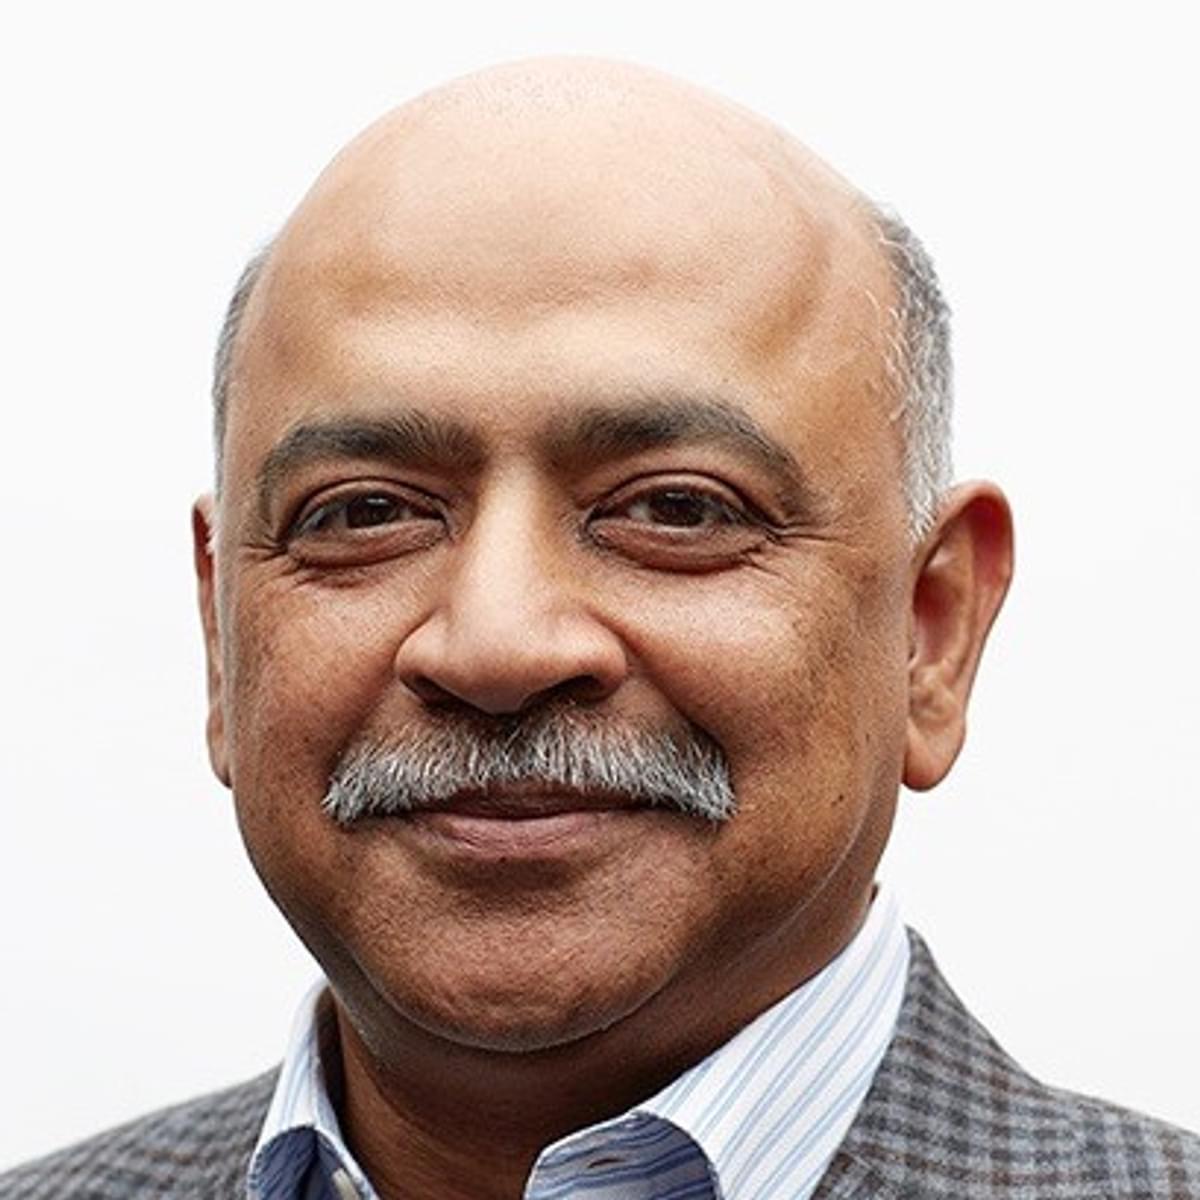 Arvind Krishna volgt Ginni Rometty op als IBM CEO image